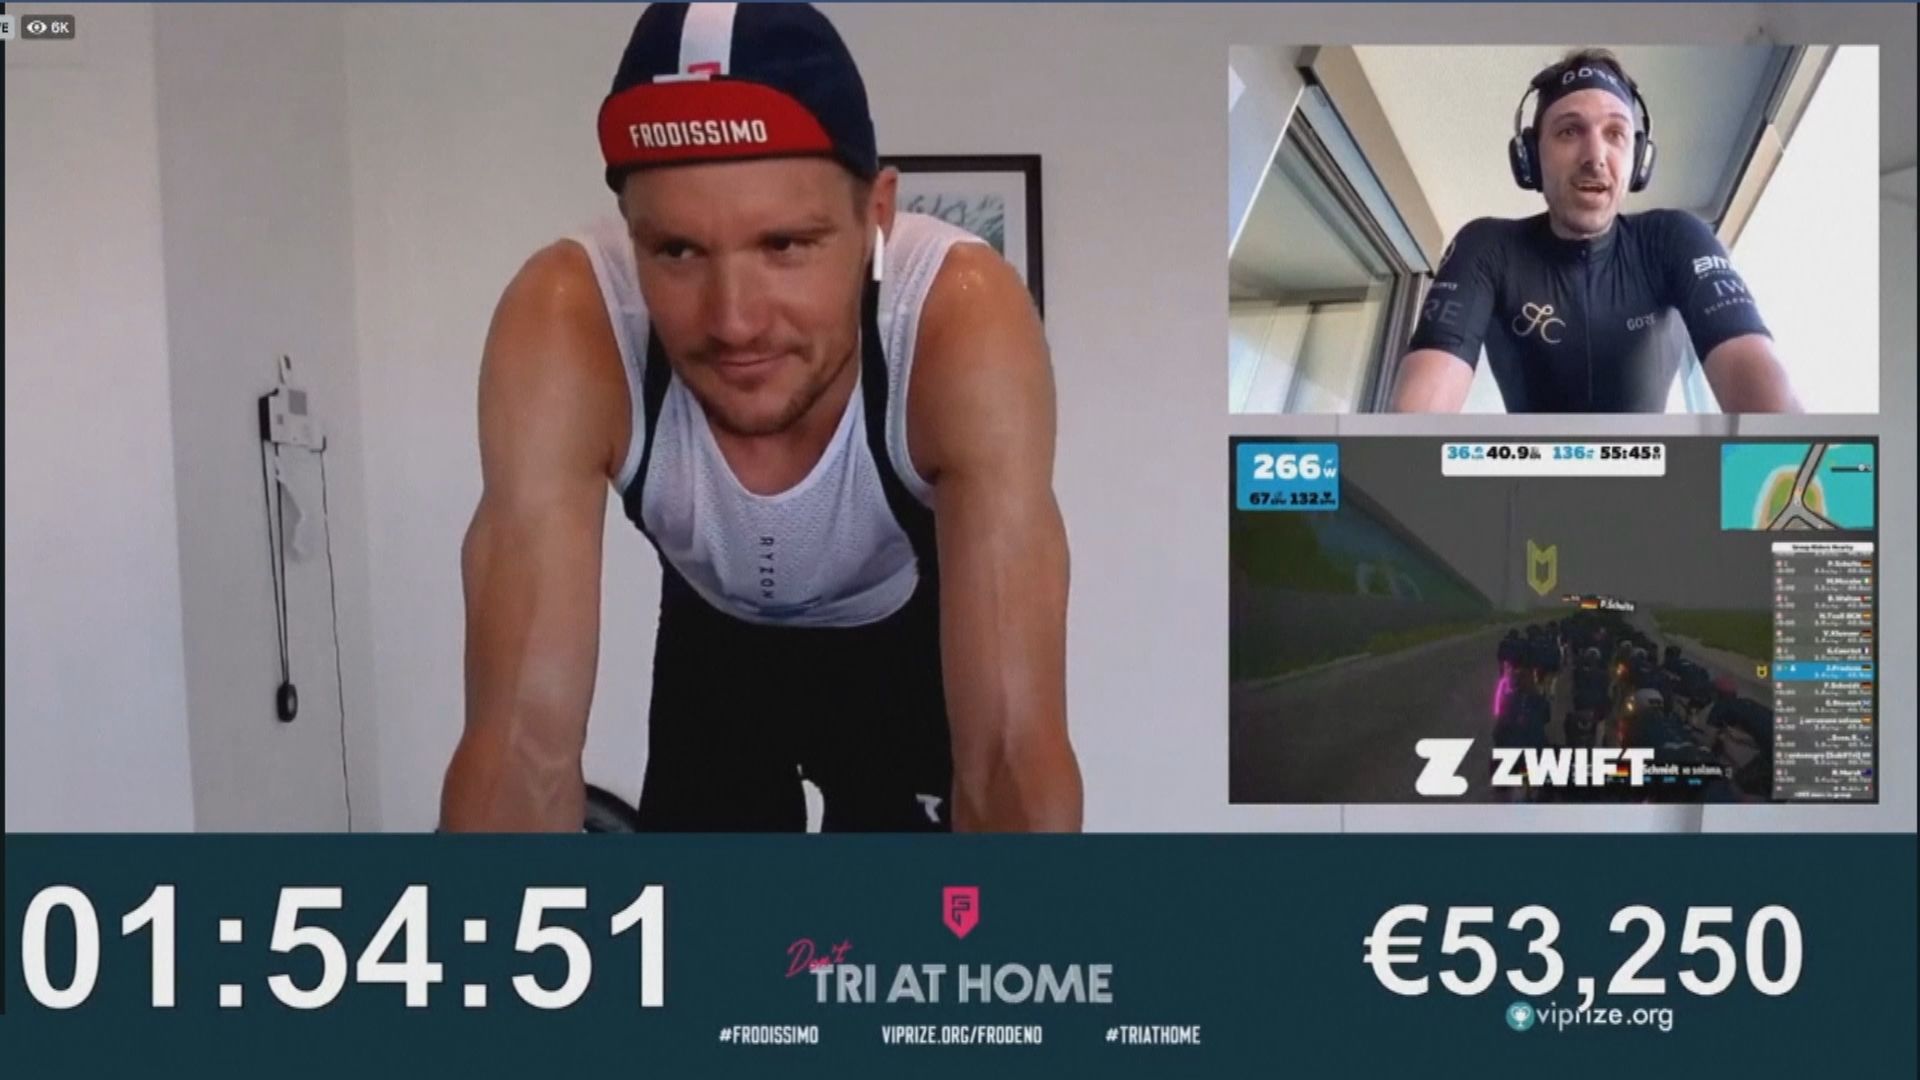 三項鐵人奧運冠軍科丹奴為醫護籌得逾廿萬歐元